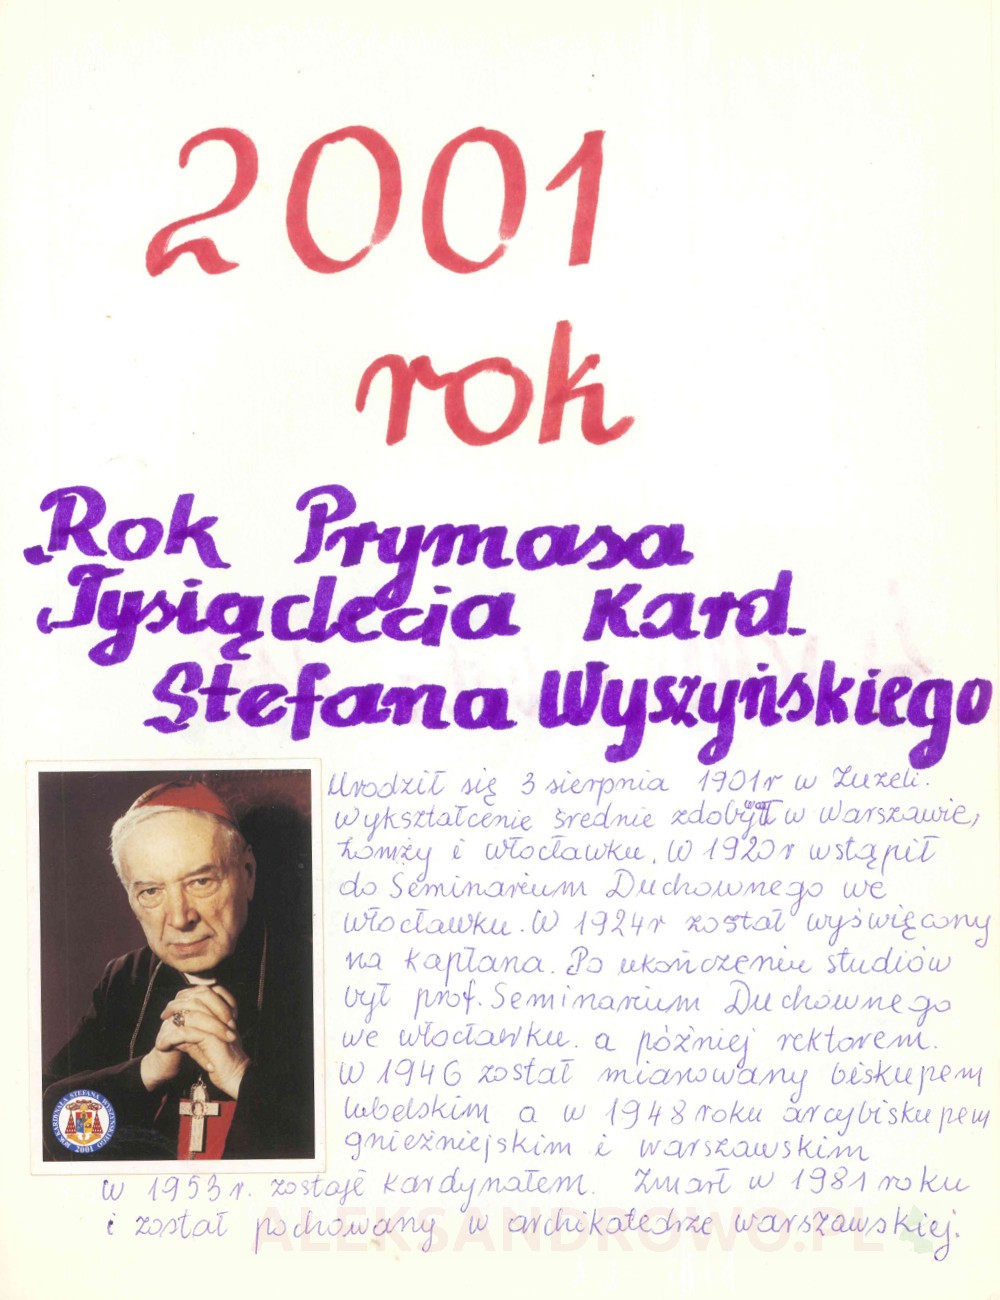 Kronika parafii Obierwia (1991 - 2017)